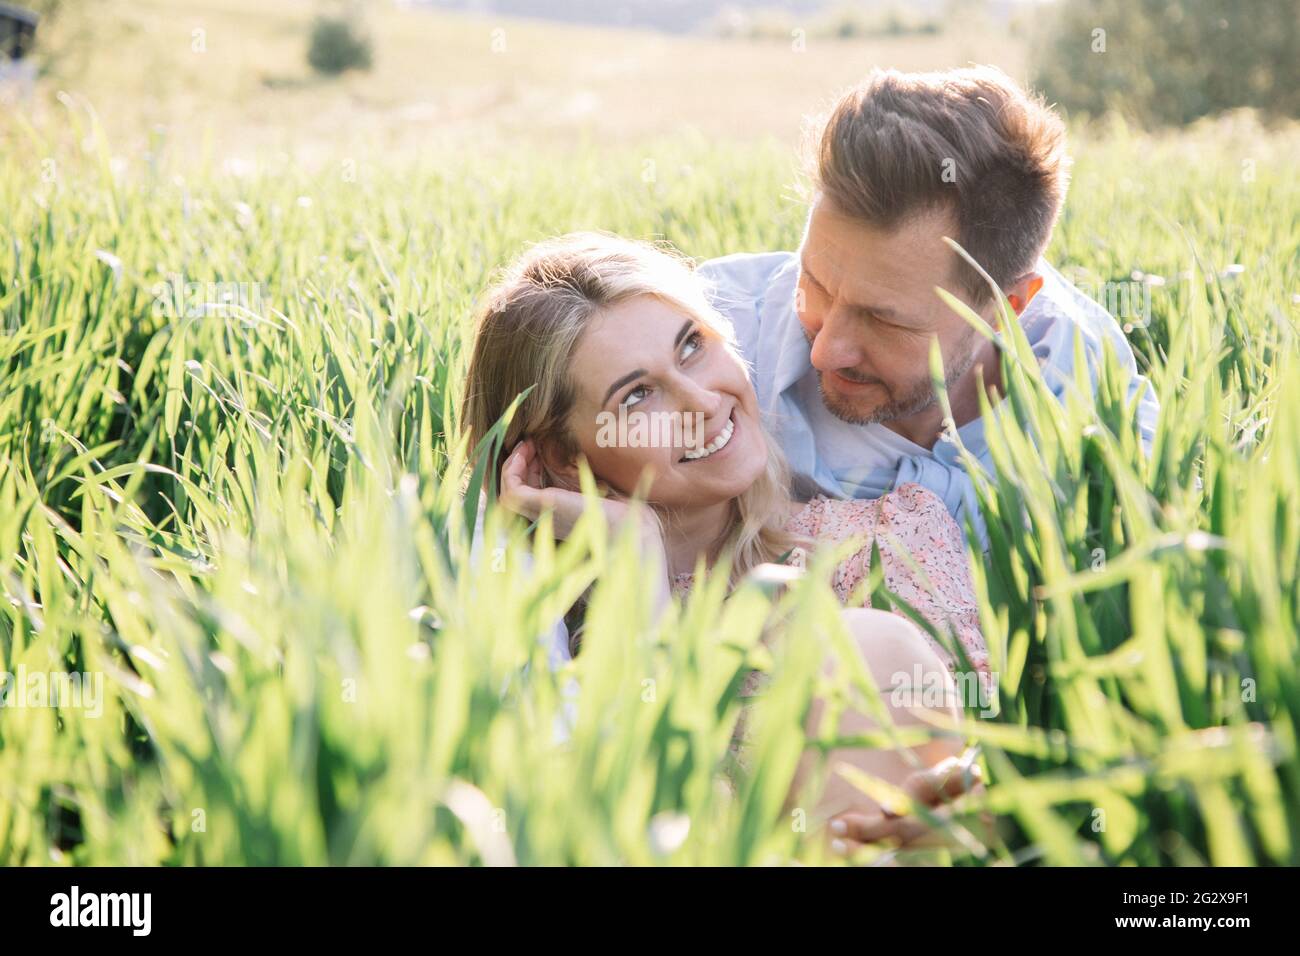 Schöne junge Frau flirtet mit ihrem Mann, während sie im Gras sitzt, Lifestyle-Porträt Stockfoto